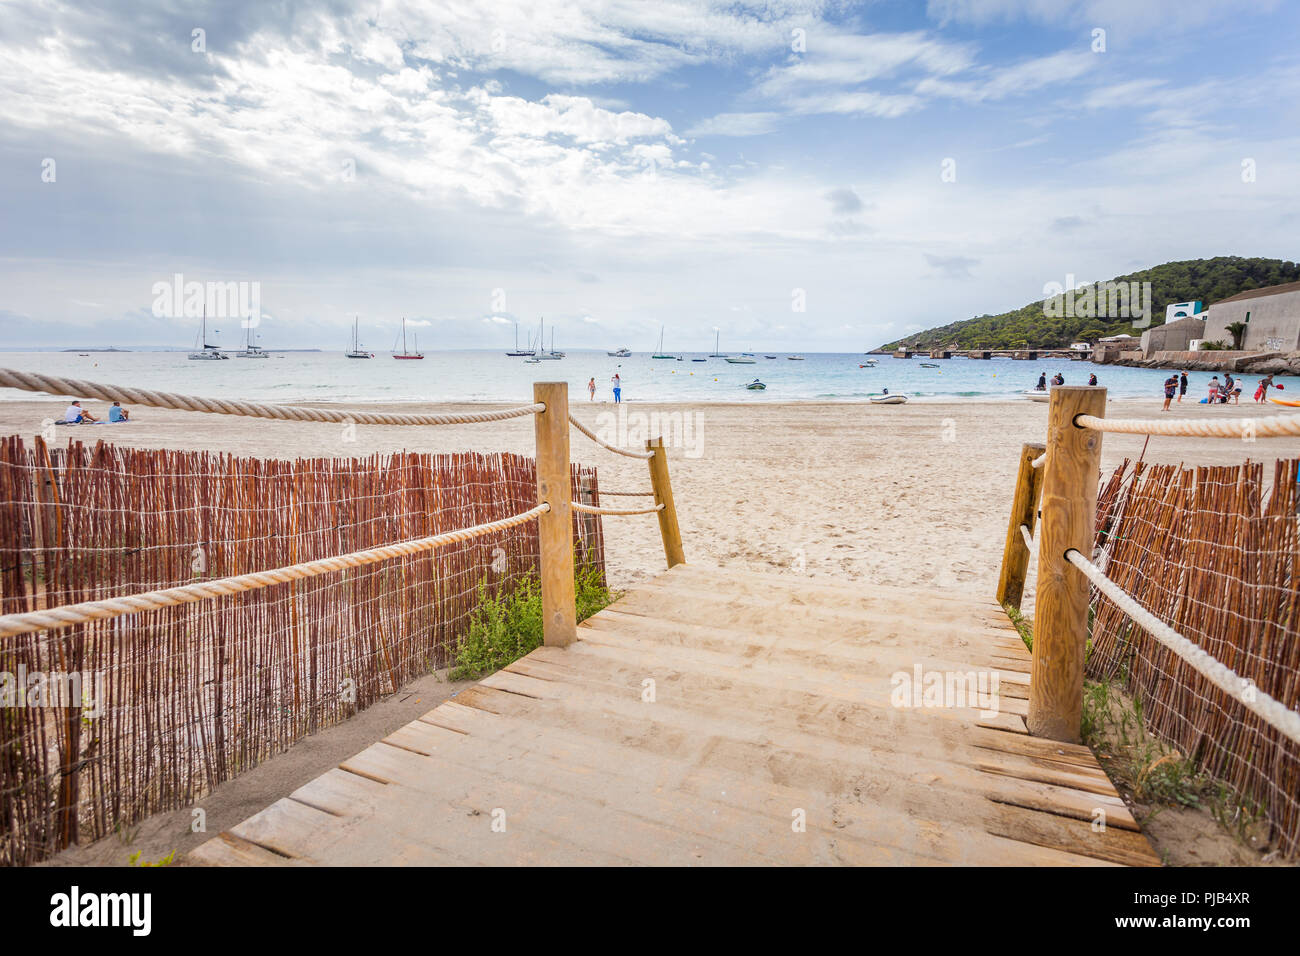 IBIZA, Spagna - 10 ottobre 2014: vista panoramica della spiaggia di Ibiza vicino Pacha, isola di Ibiza Foto Stock